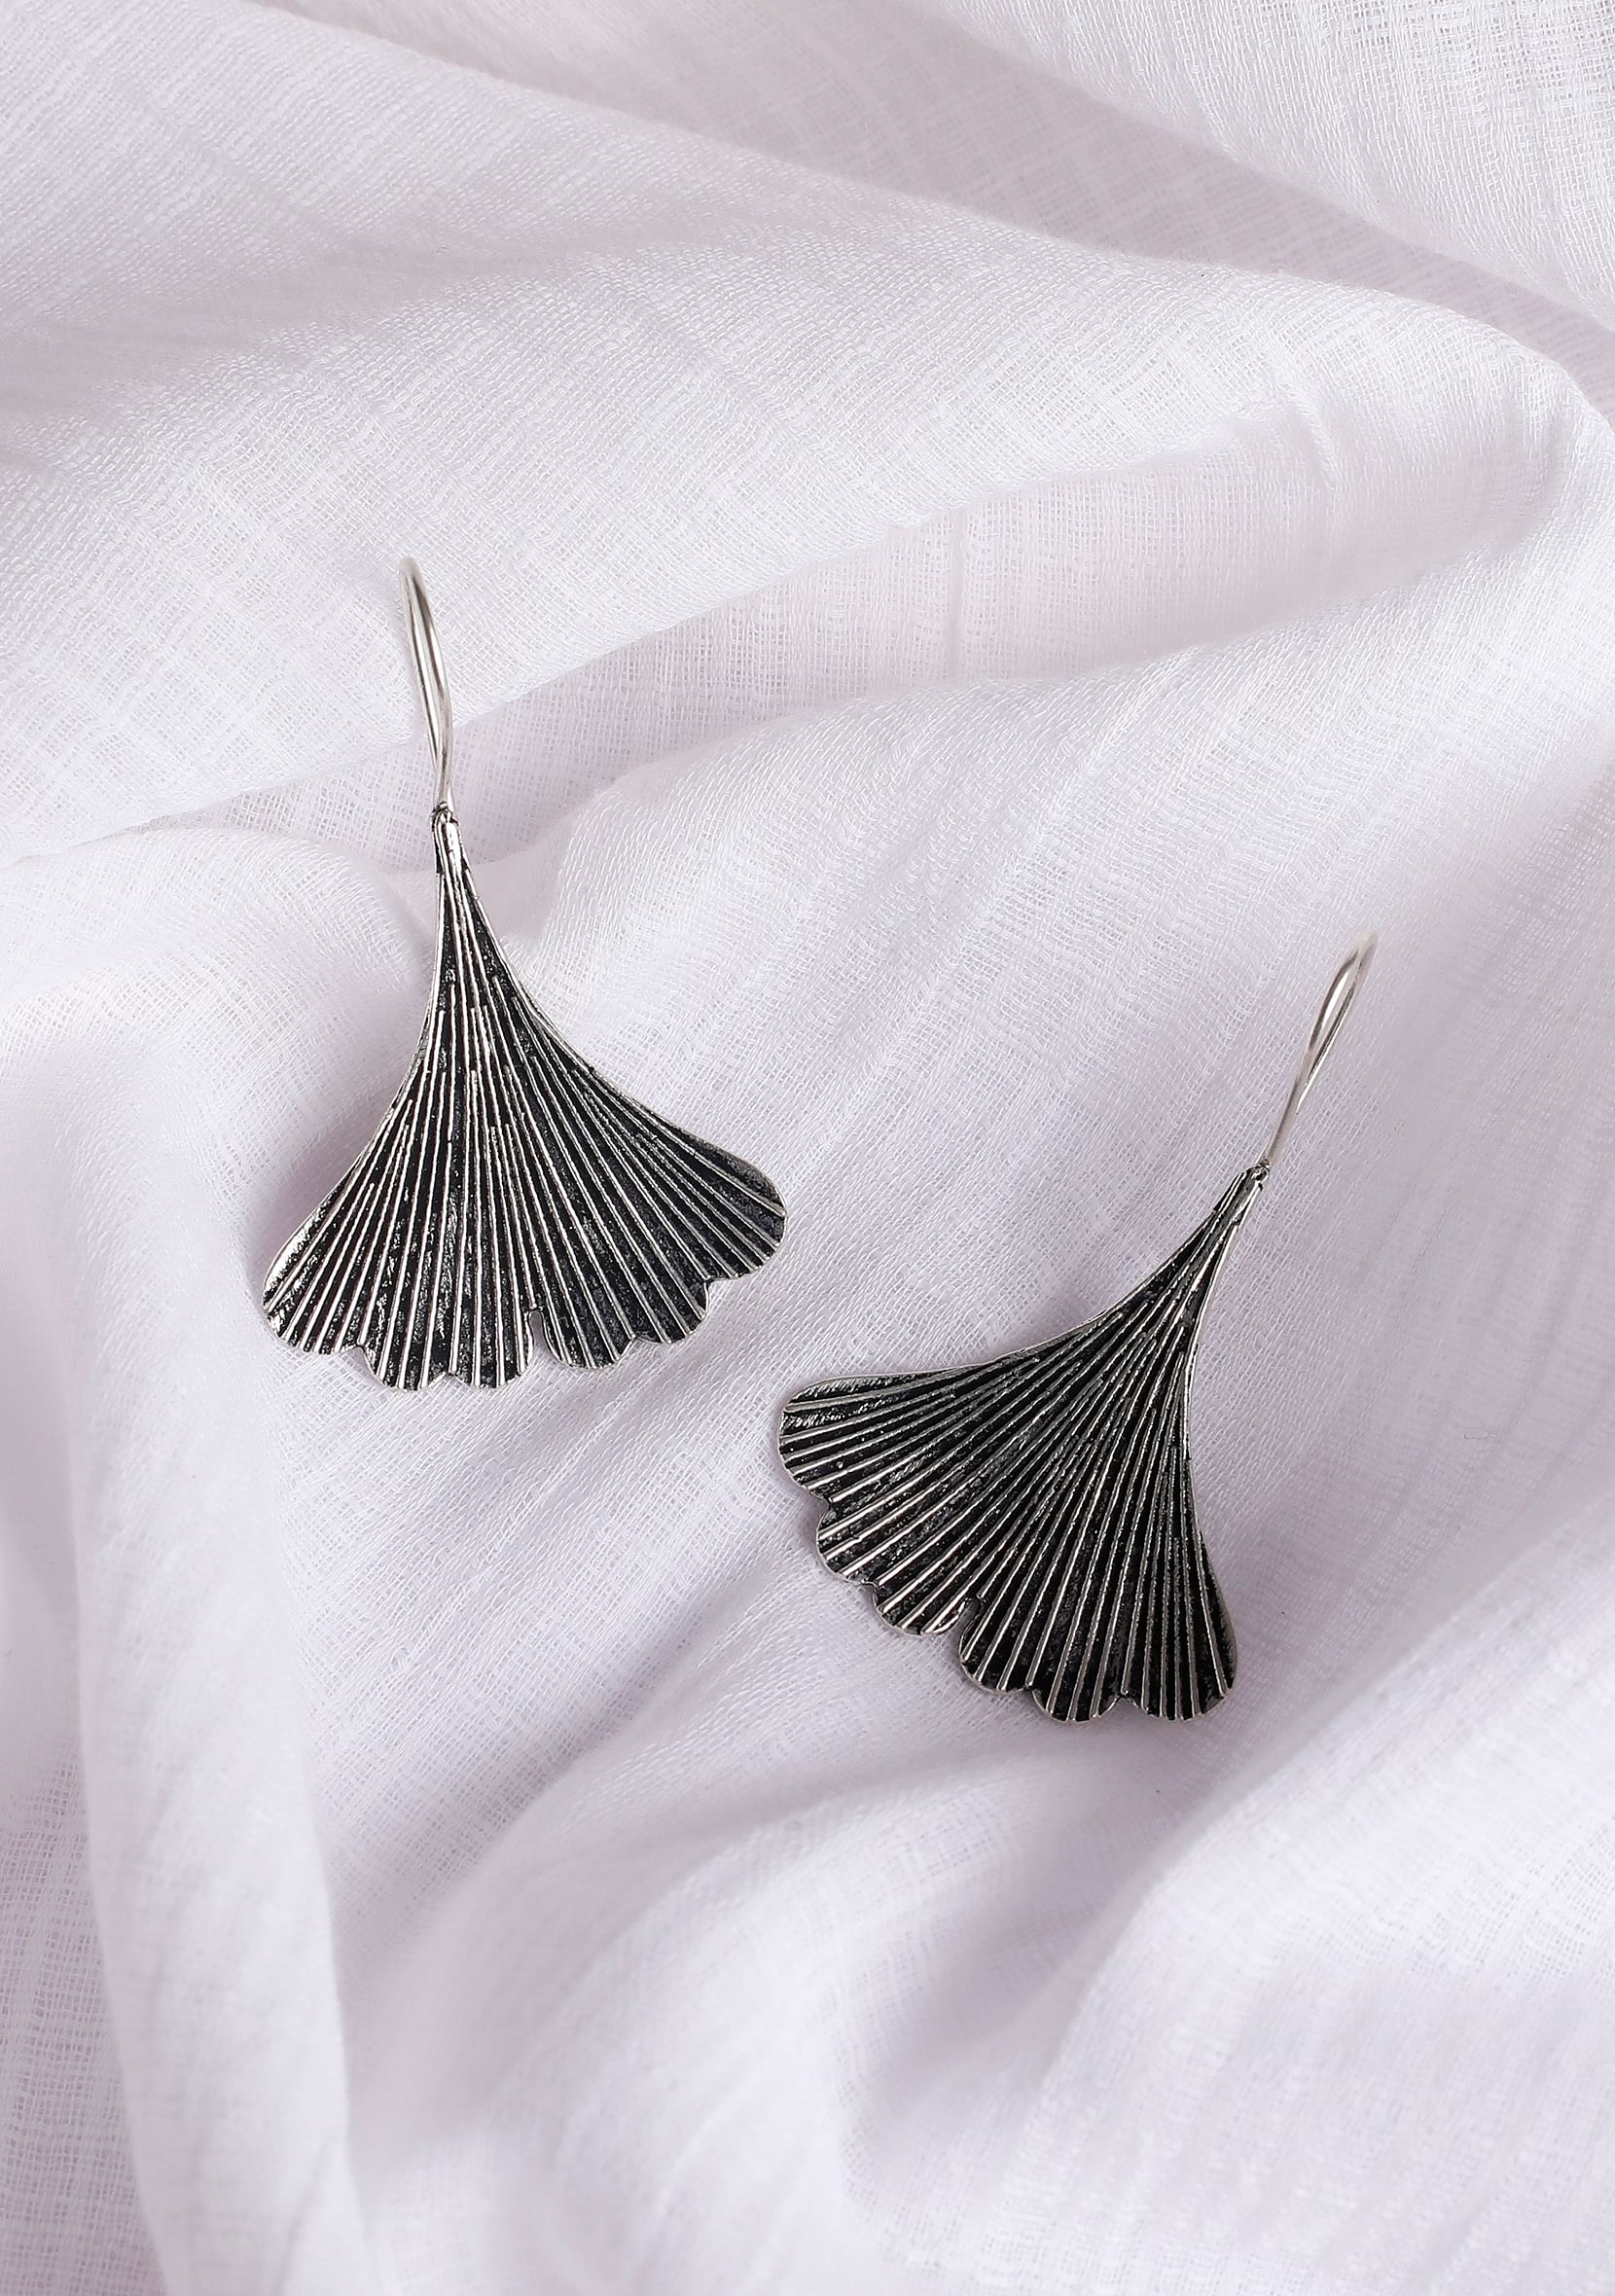 Grey amethyst earrings - Imitationhub - 2759891